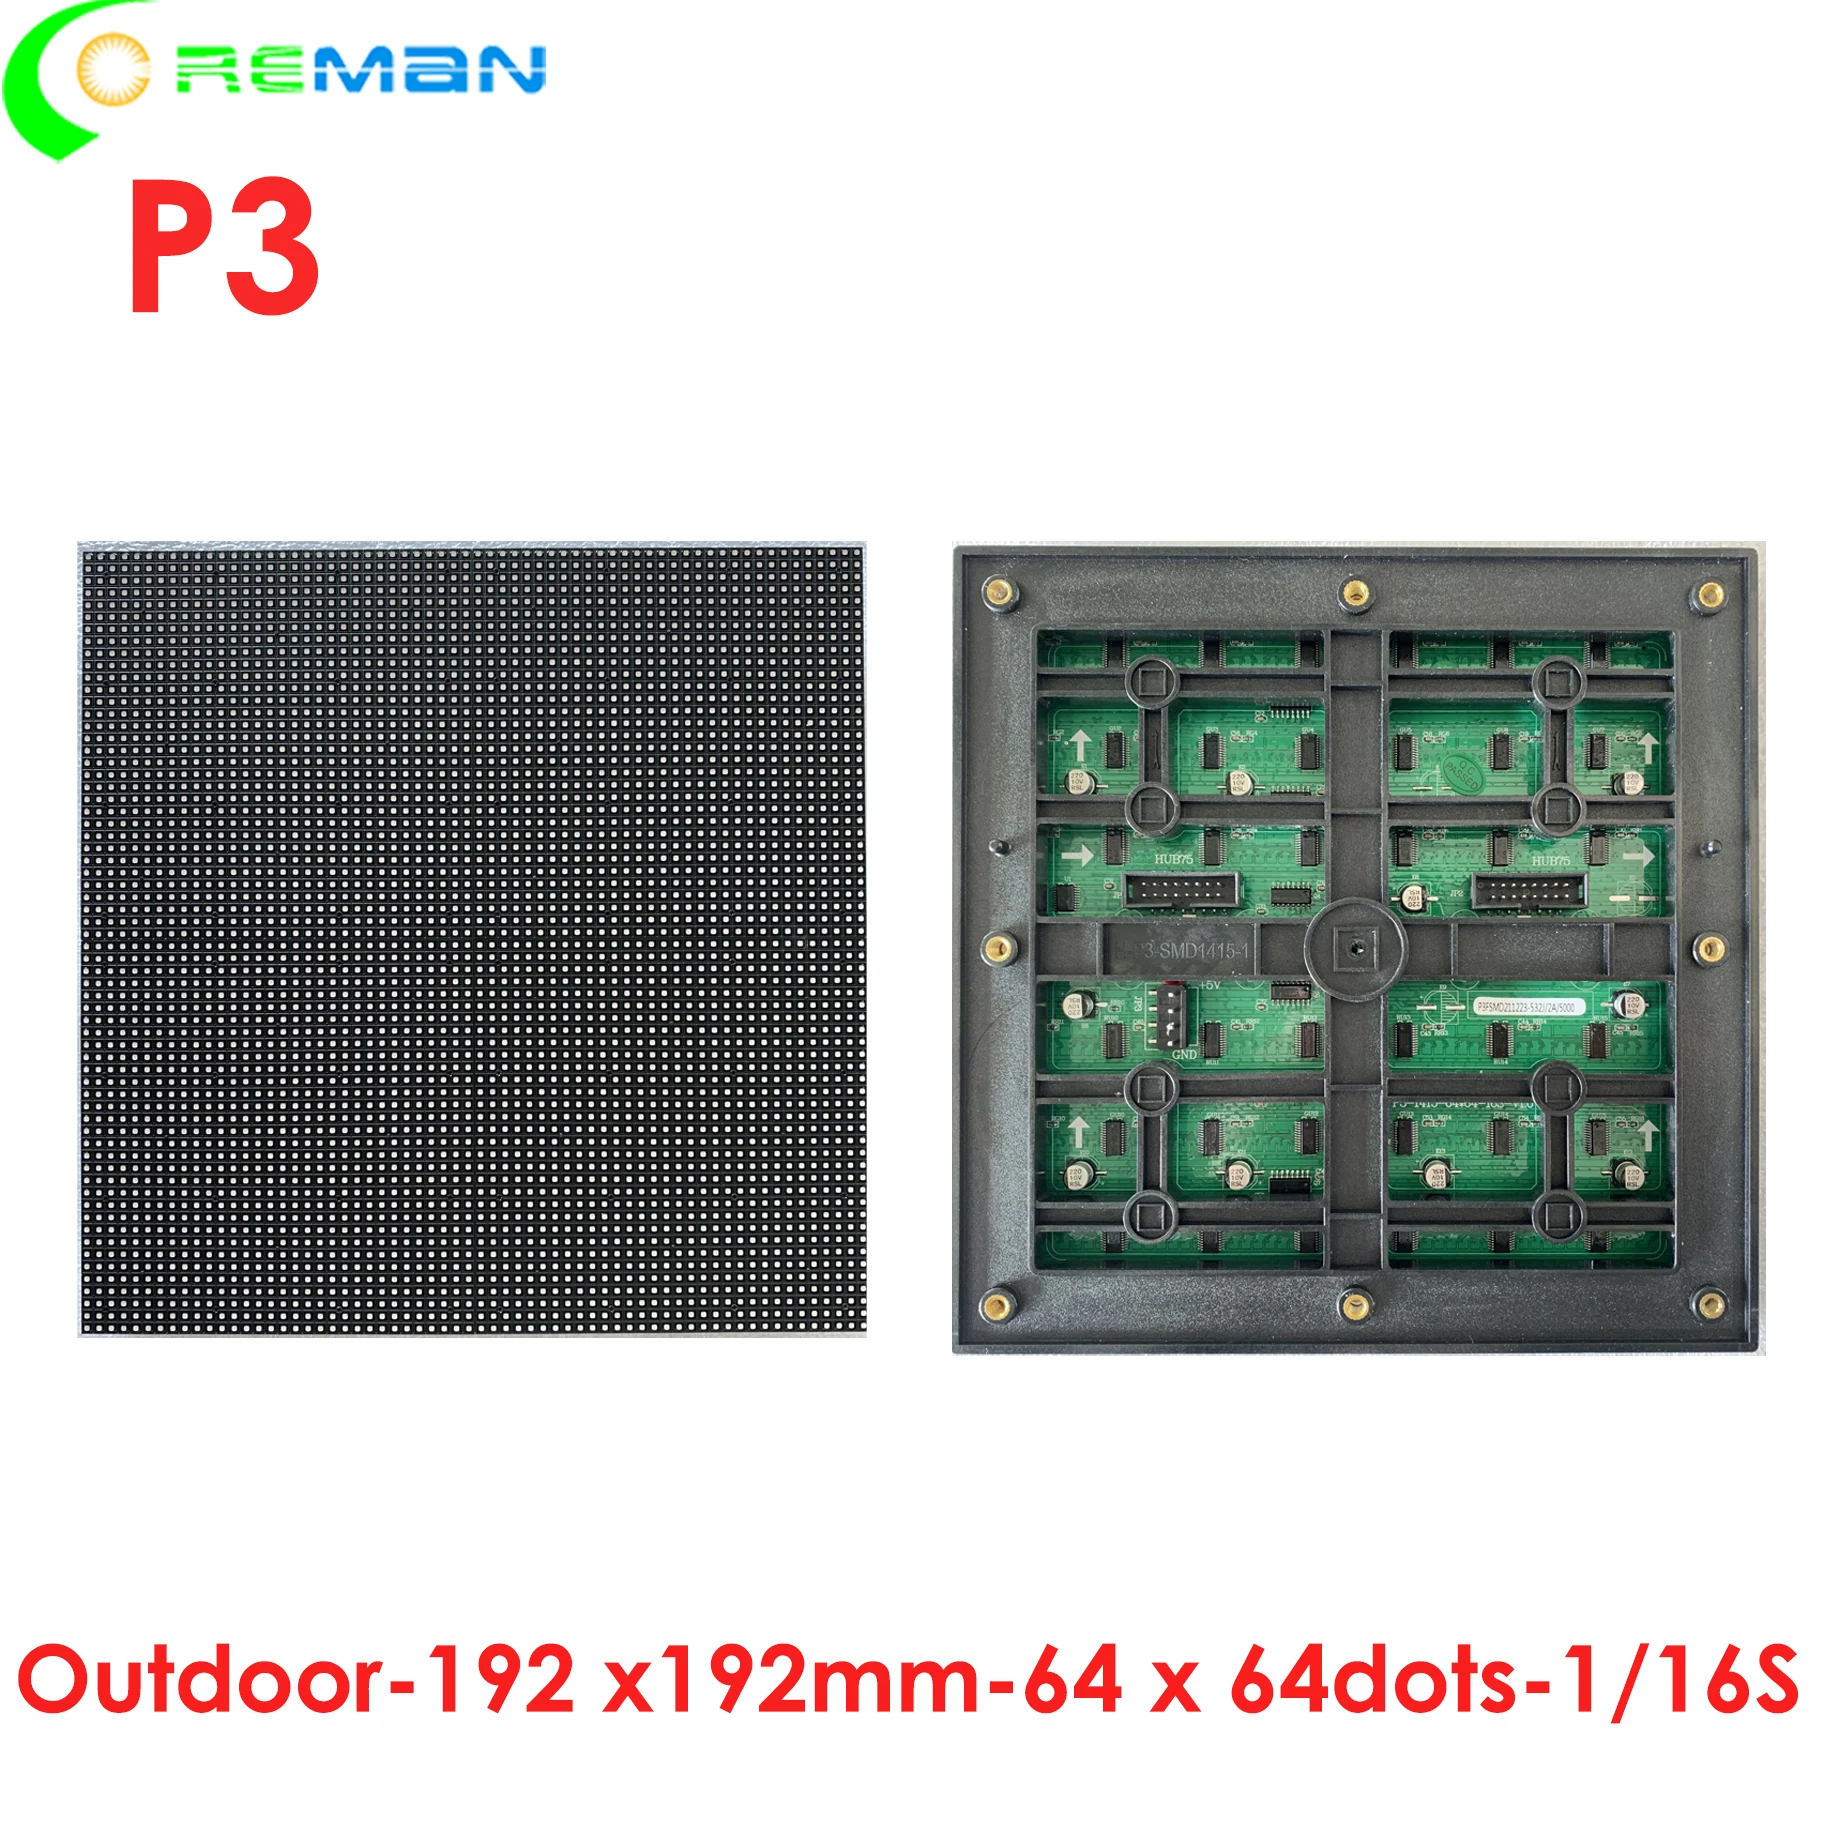 Pigiai RGB led matricos p3 lauko led modulis SMD1415 192mm x 192mm 64x64 1/16S hub75 . ' - ' . 1